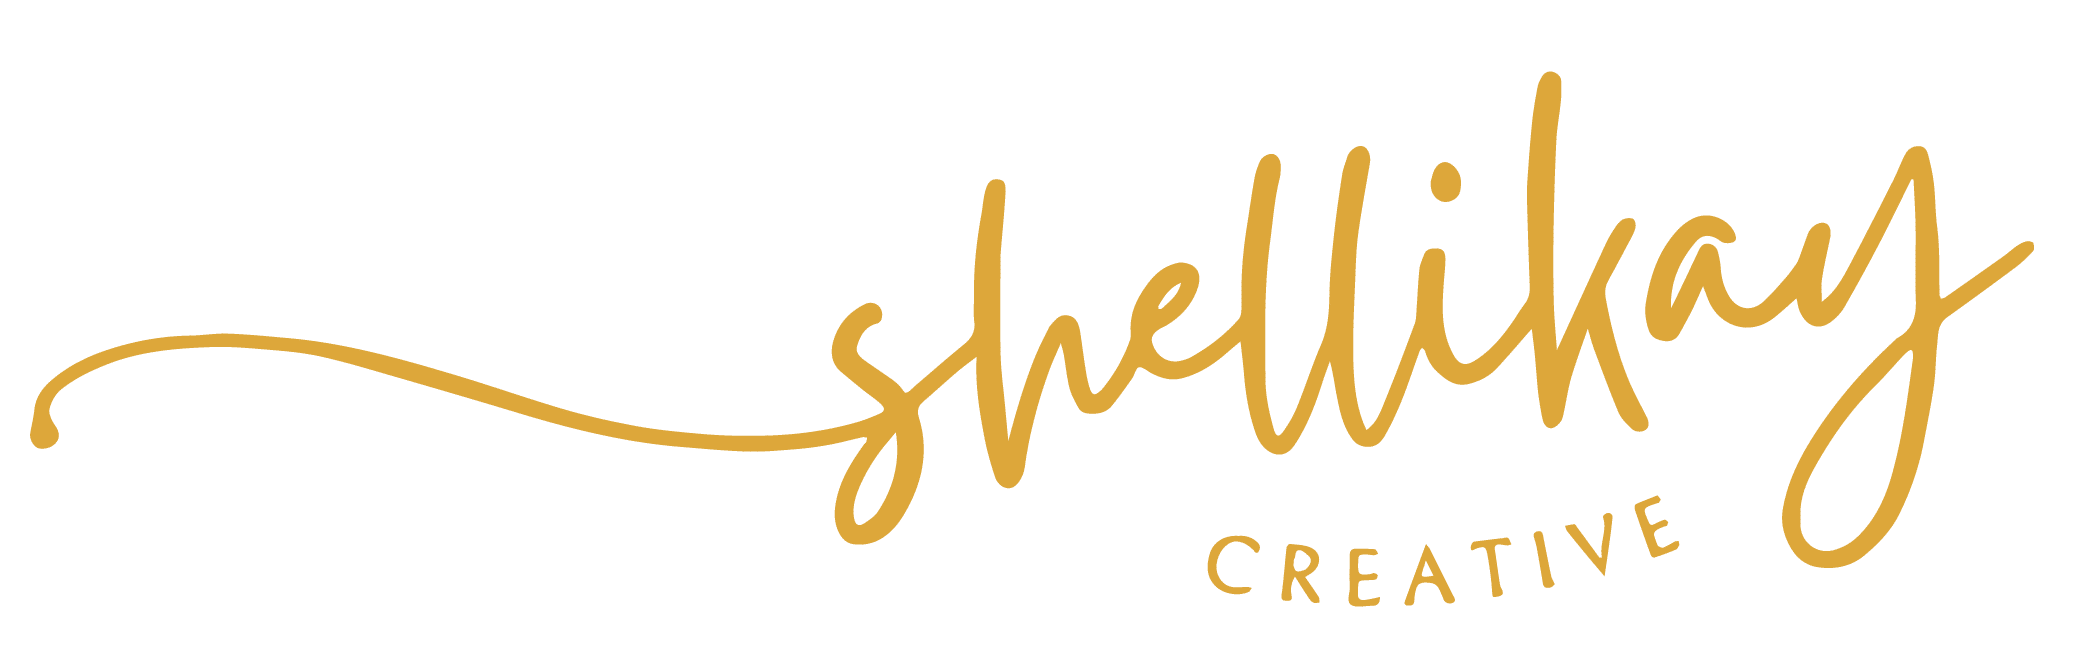 Shelli Kay Creative Logo Gold